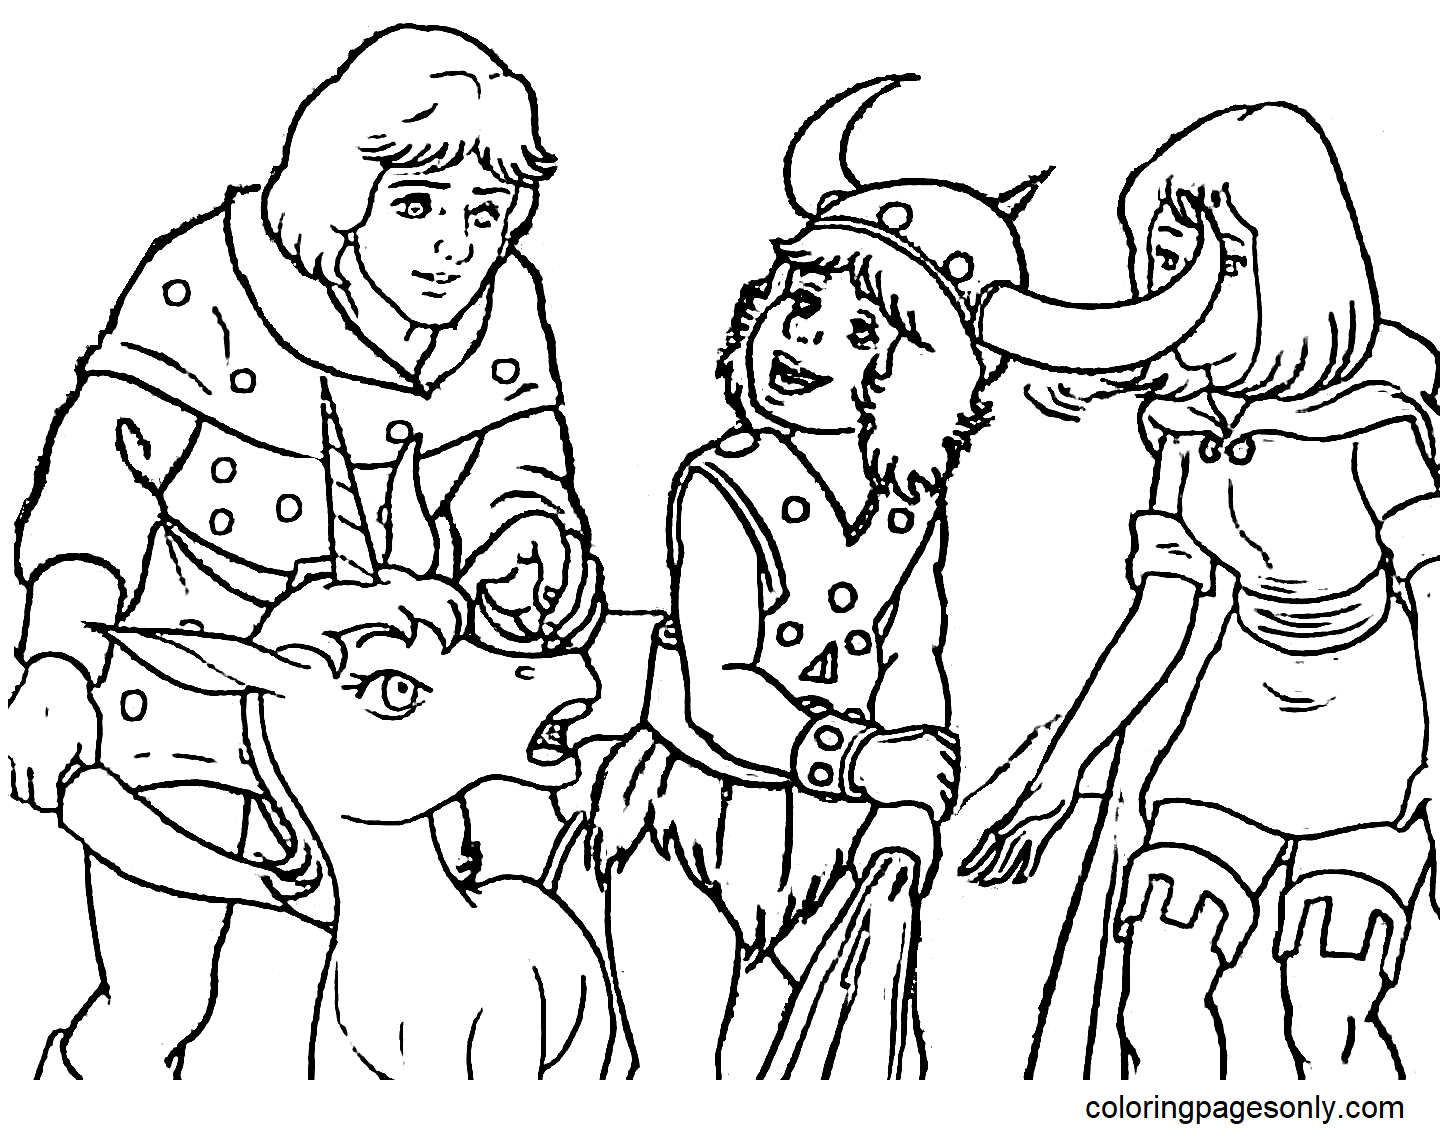 Hank il Ranger, Bobby il Barbaro, Sheila la Ladra e Uni l'Unicorno di Dungeons & Dragons